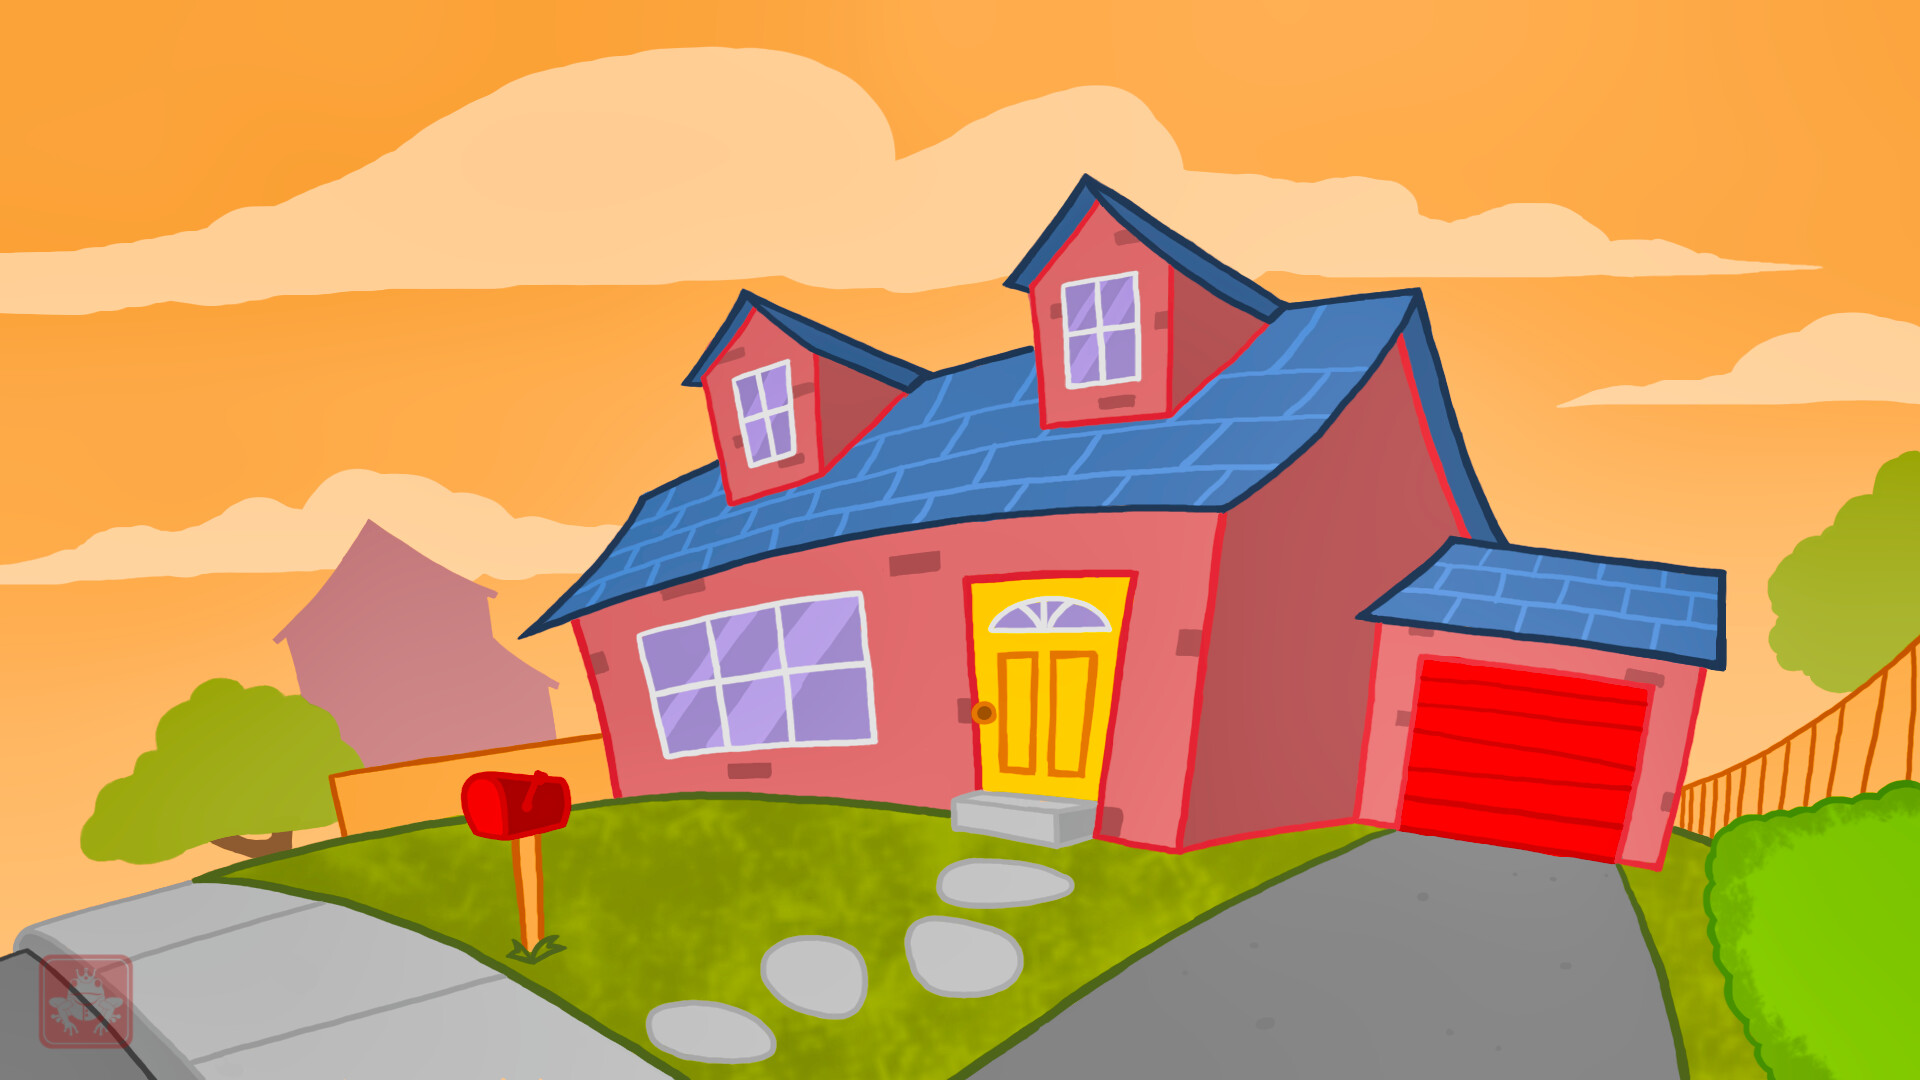 ArtStation - House Animation Background.